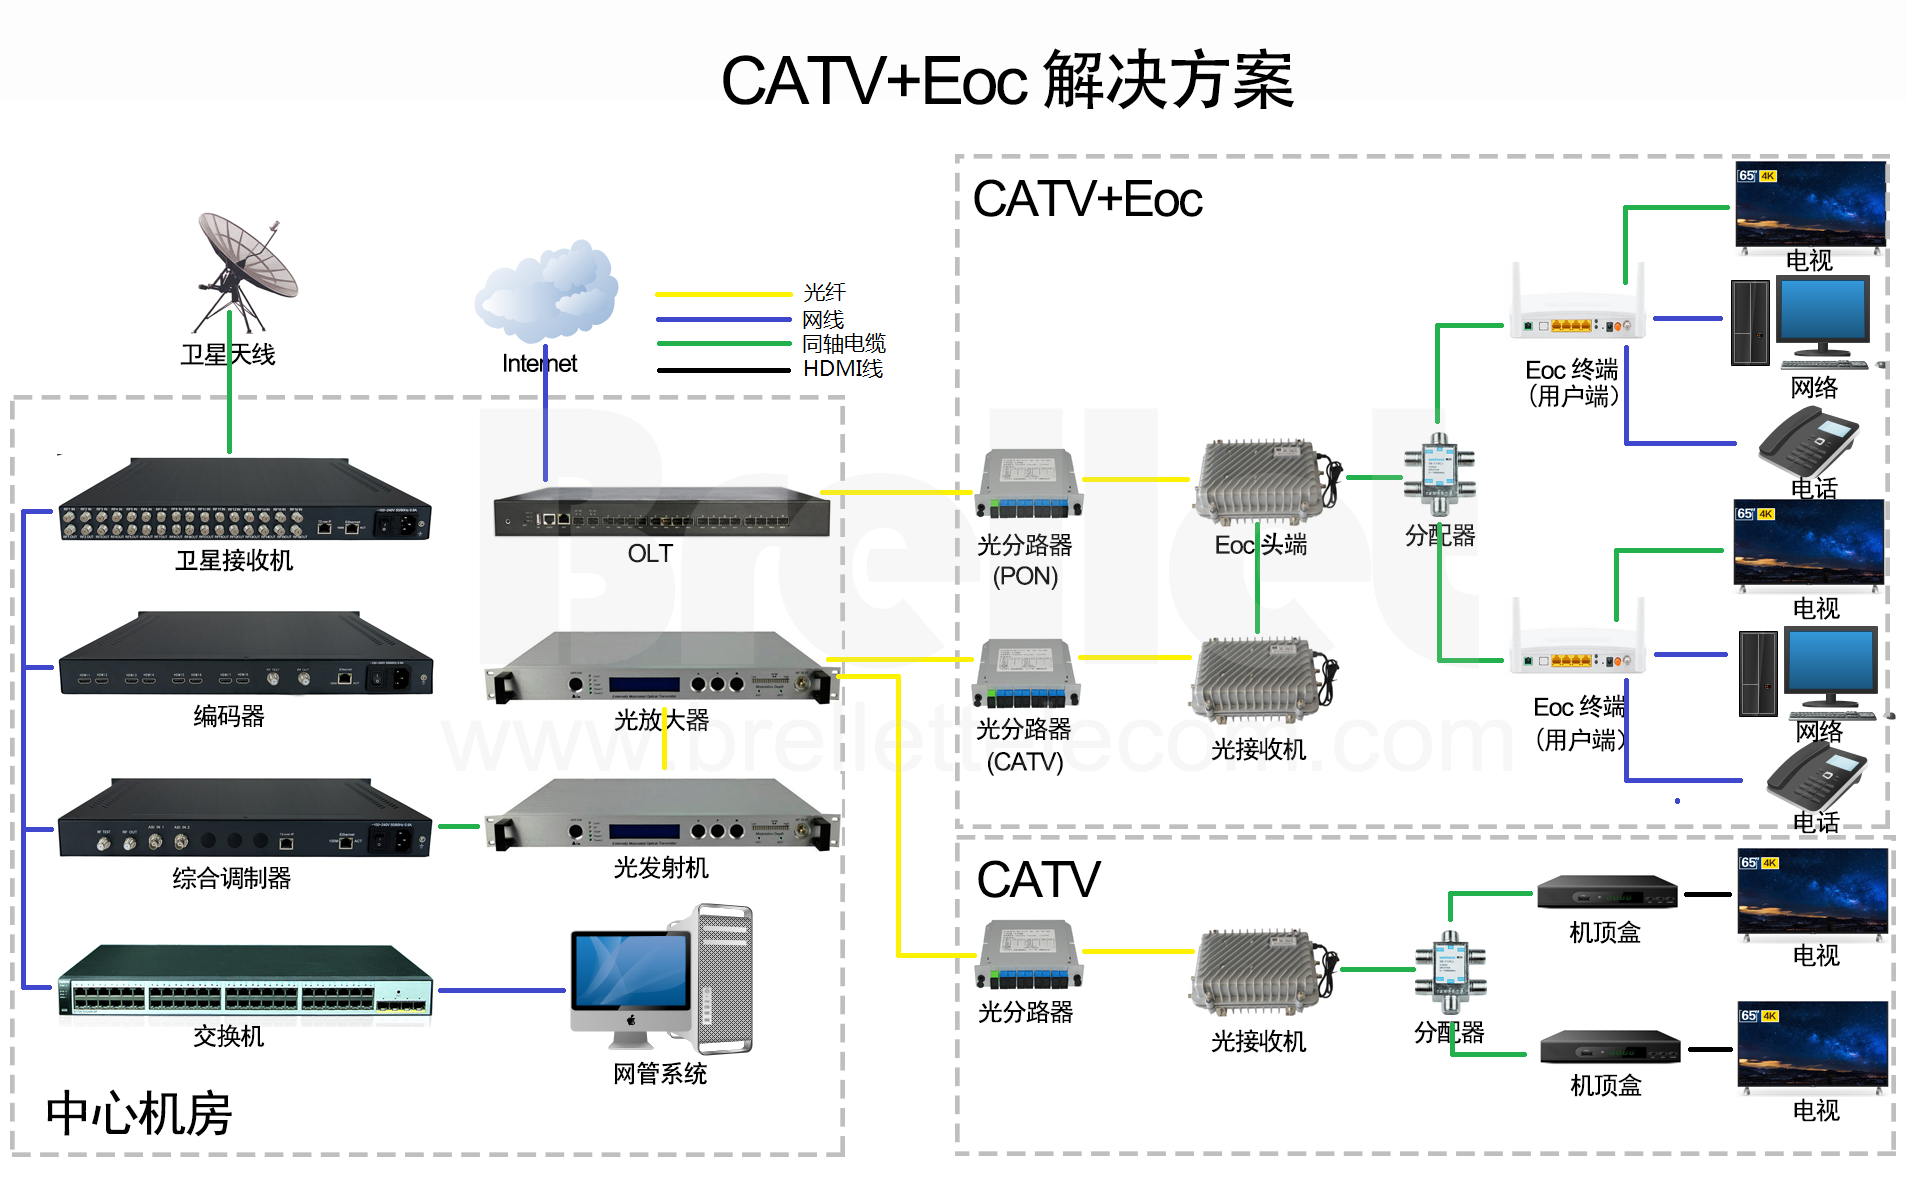 CATV+Eoc 解决方案